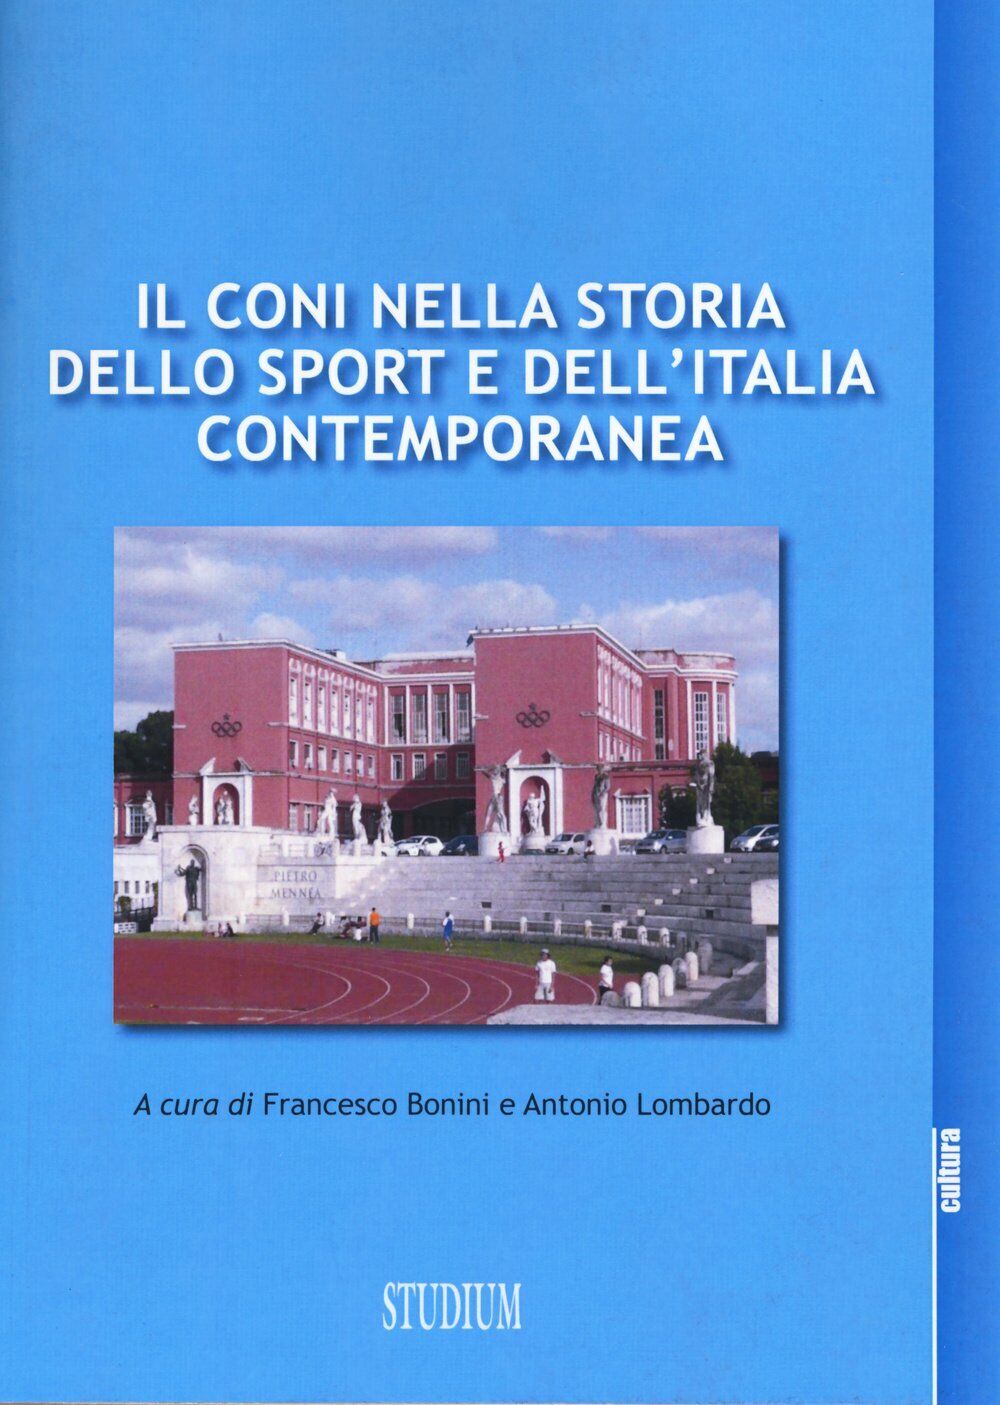 Il CONI nella storia dello sport e dell'Italia contemporanea - Stadium, 2015 libro usato